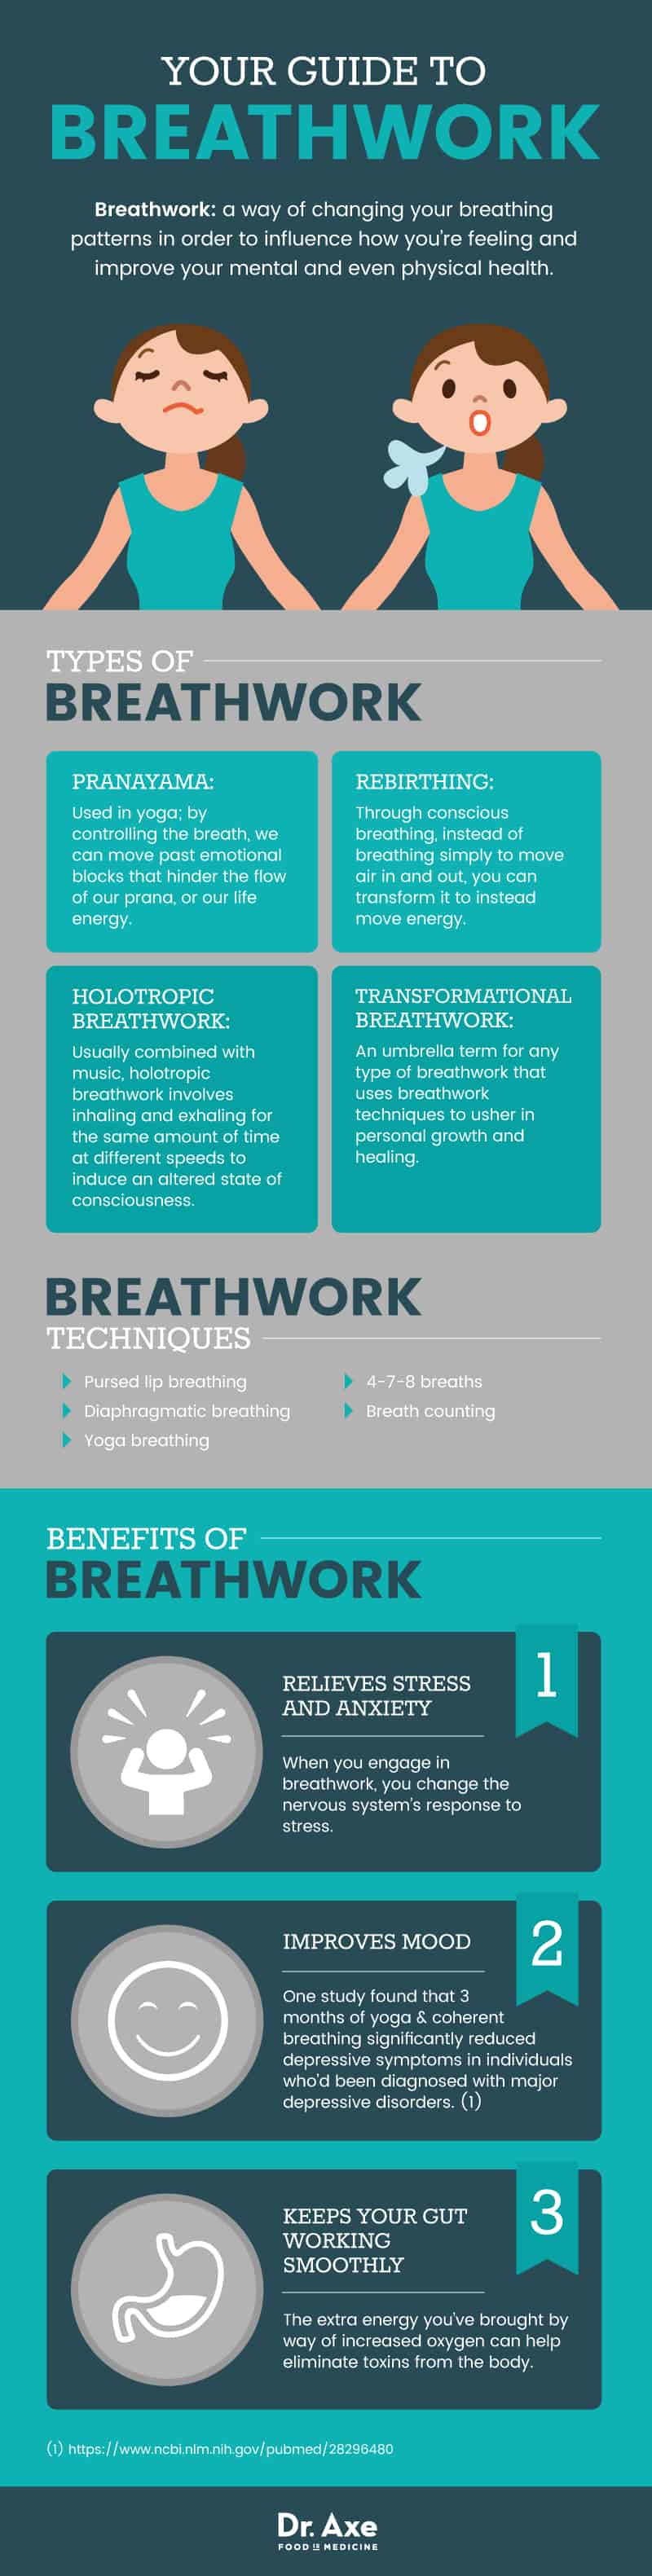 Guide to breathwork - Dr. Axe